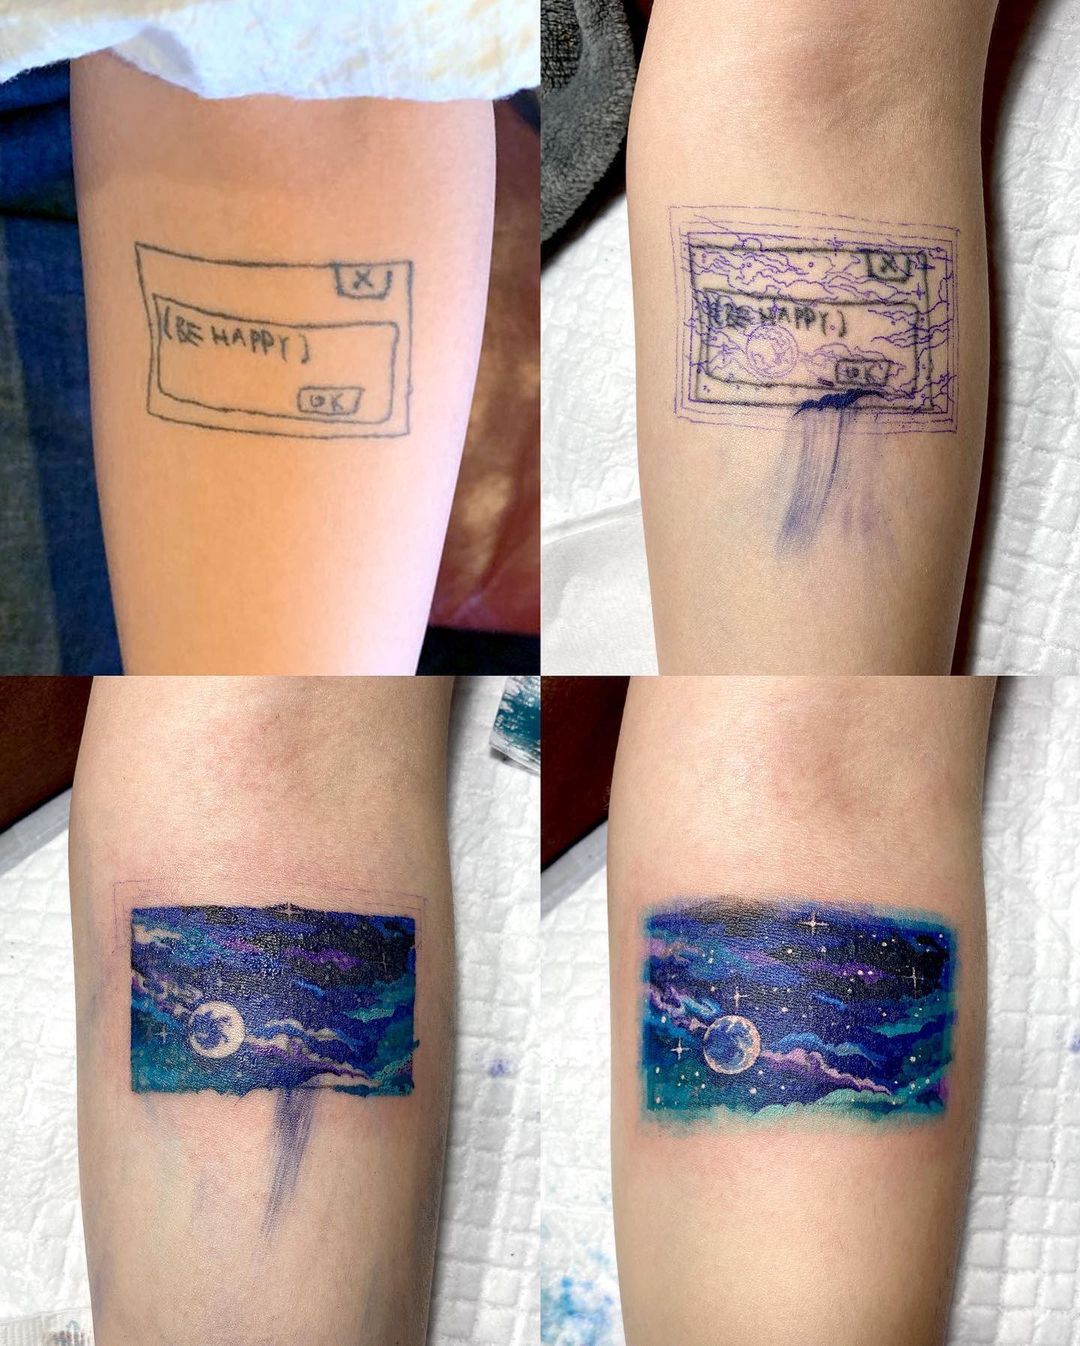 Instagram/tattooist_sigak